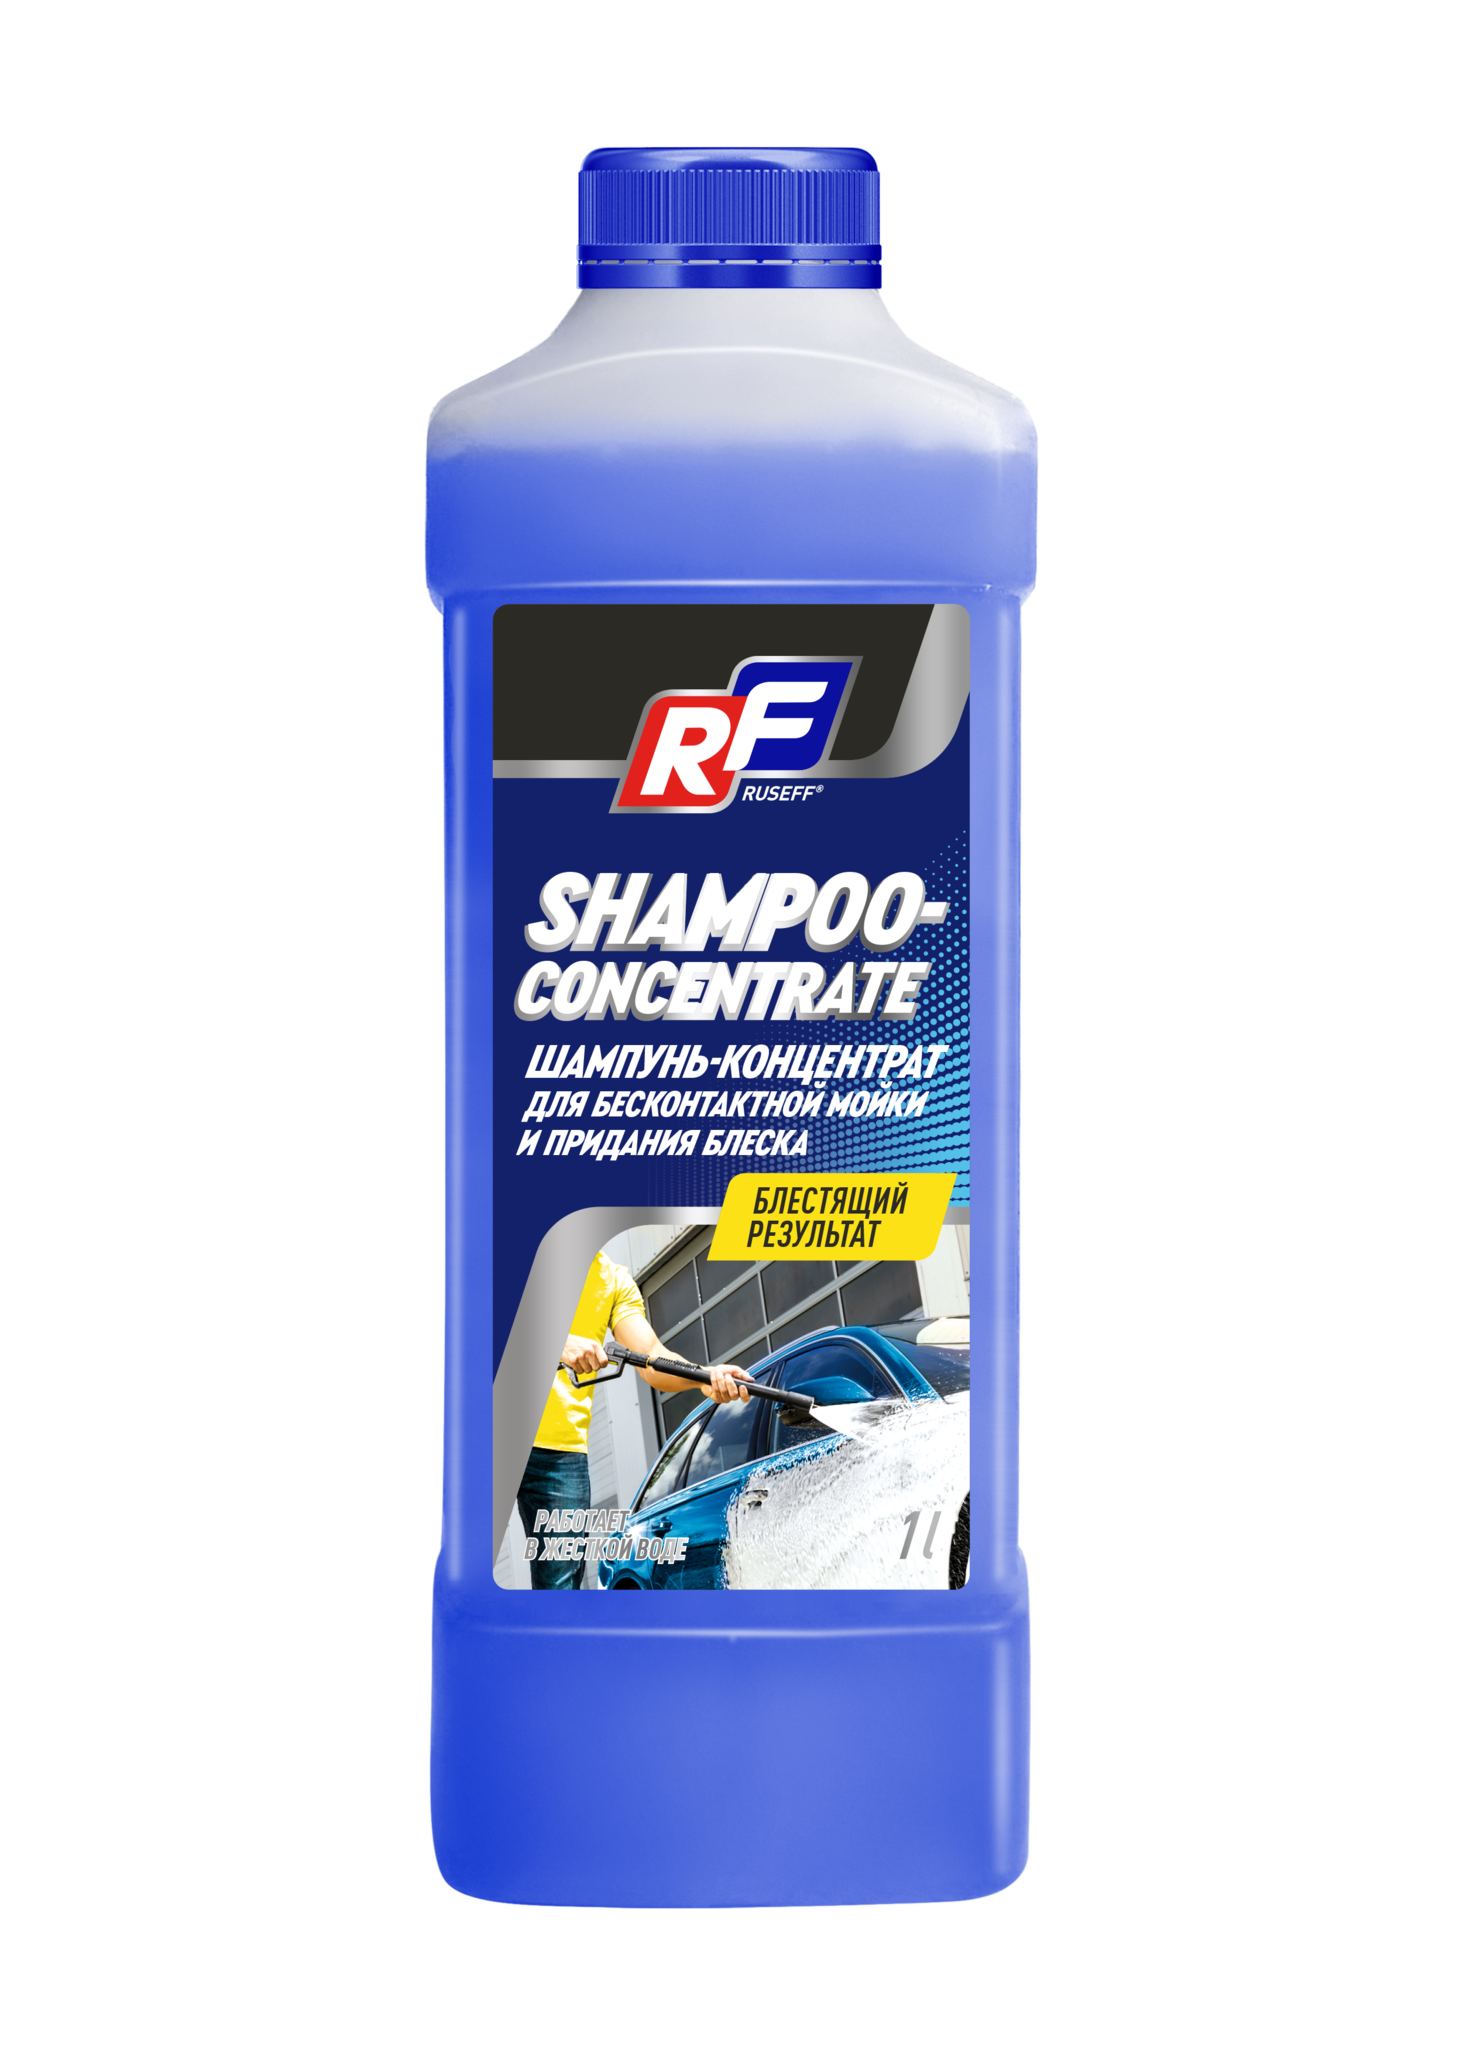 Ruseff Shampoo Concentrate Шампунь для бесконтактной мойки (концентрат)